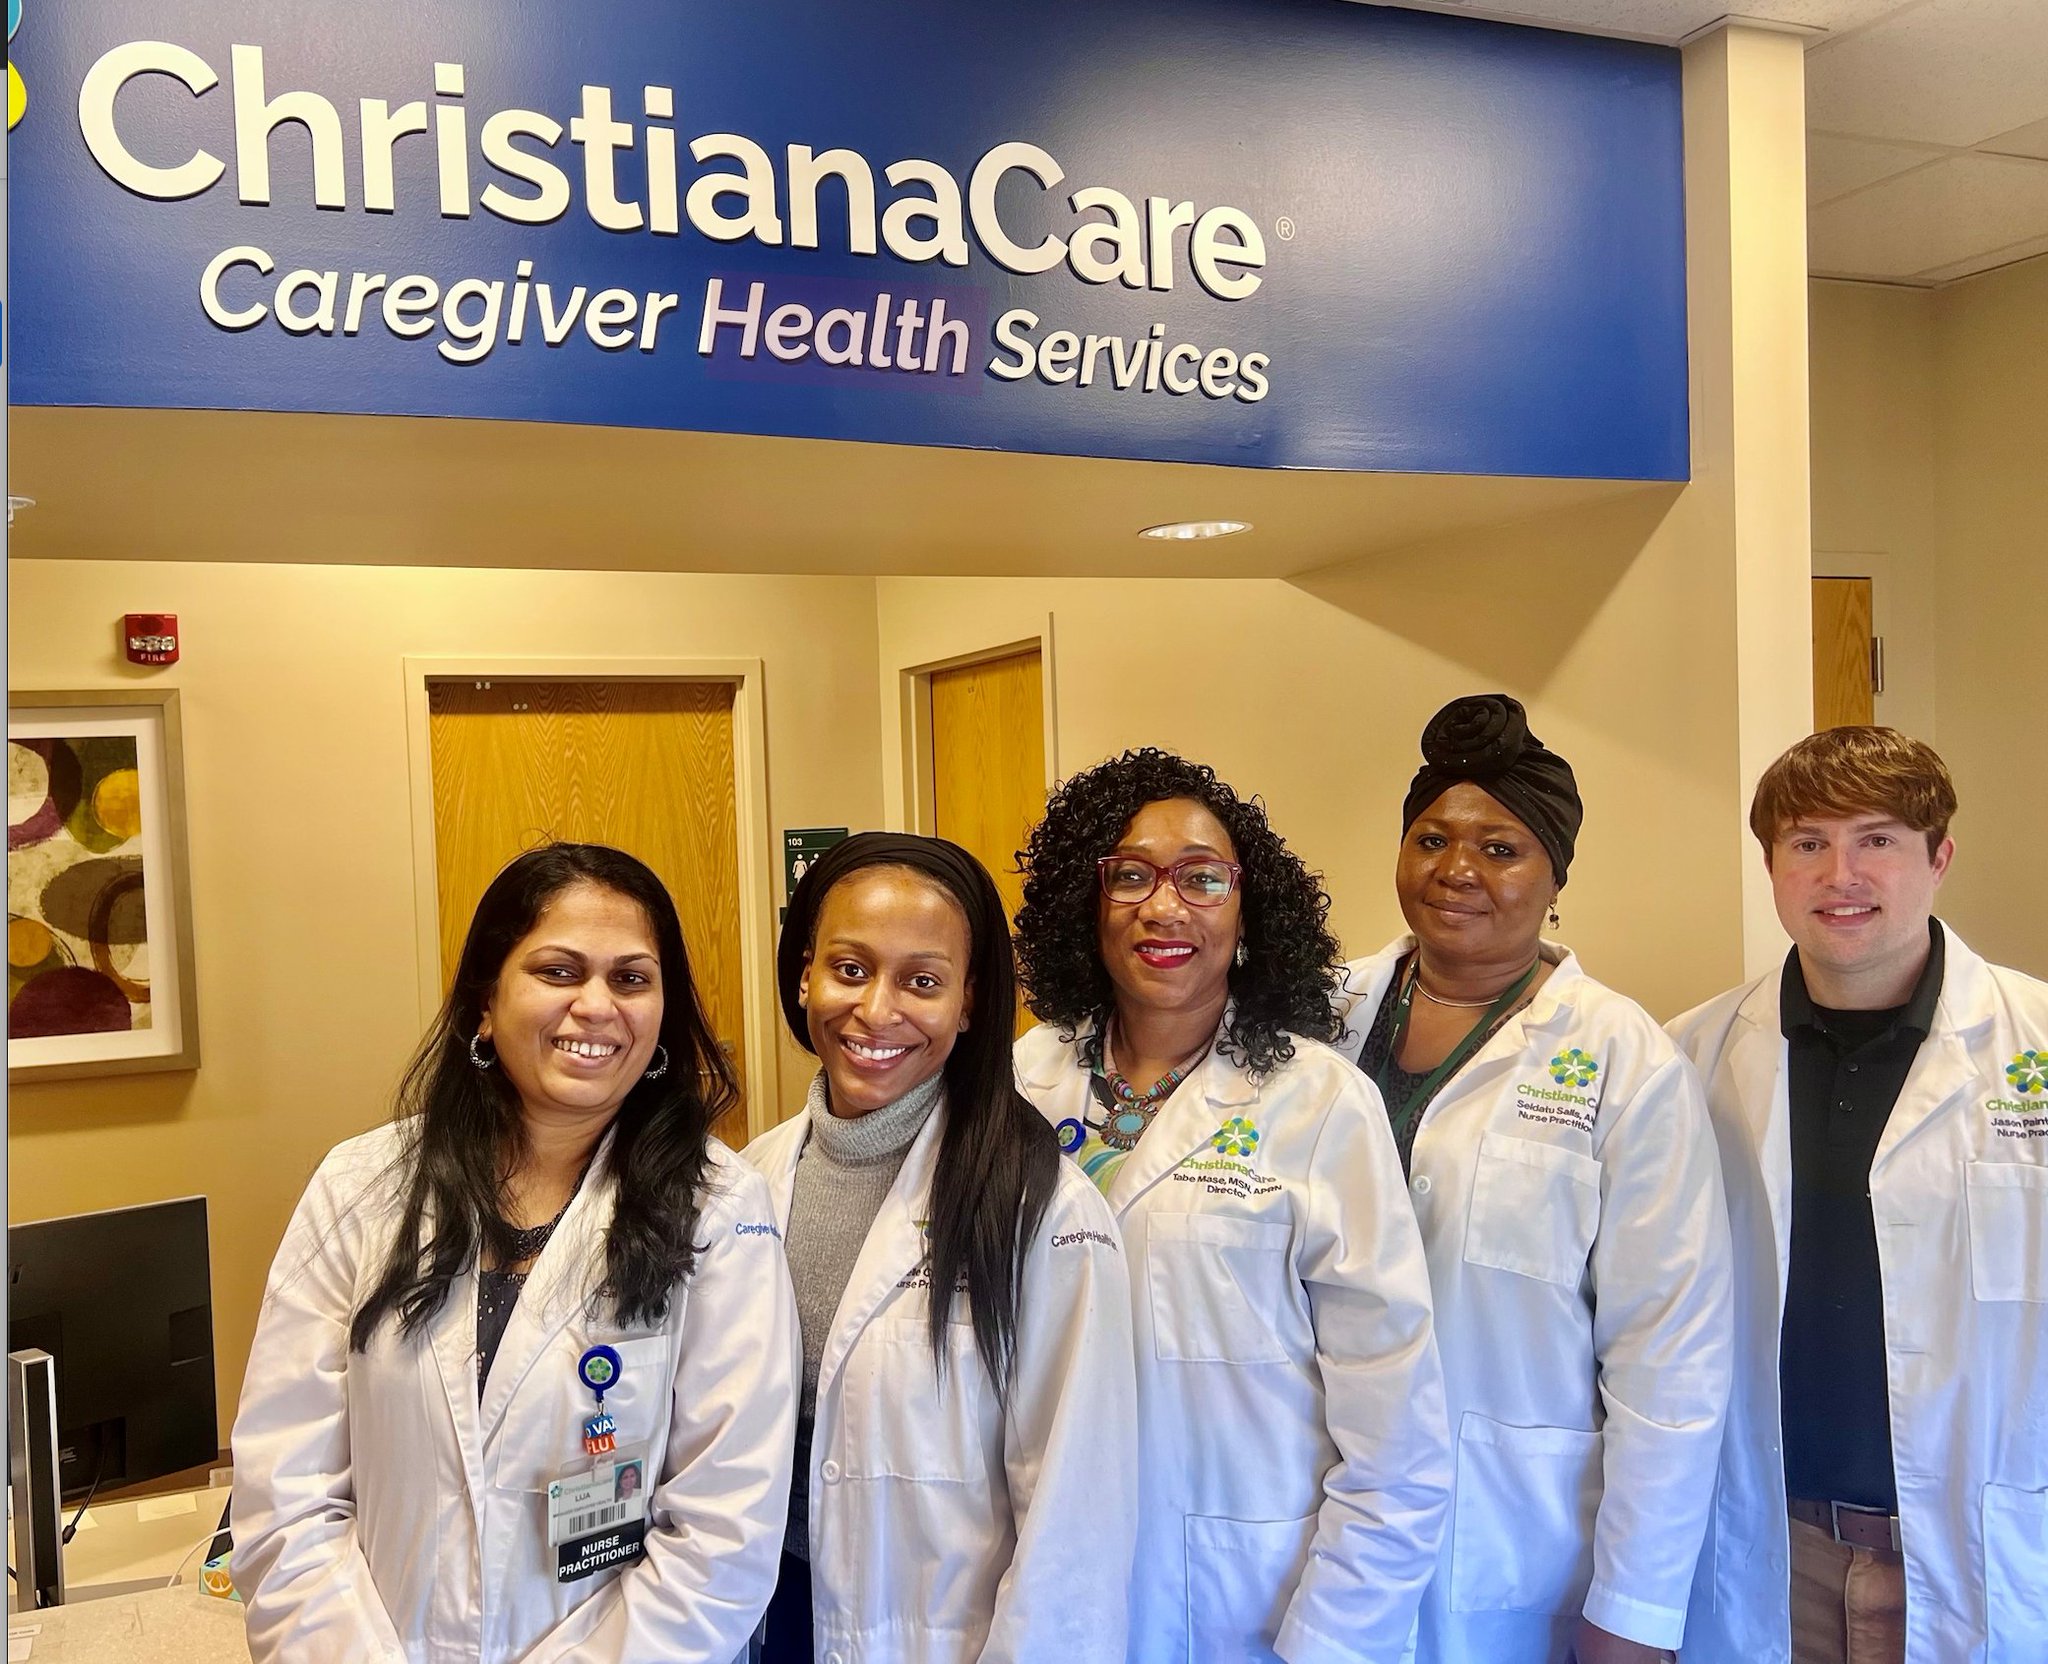 ChristianaCare on Twitter "During Ambulatory Care Nursing Week, we